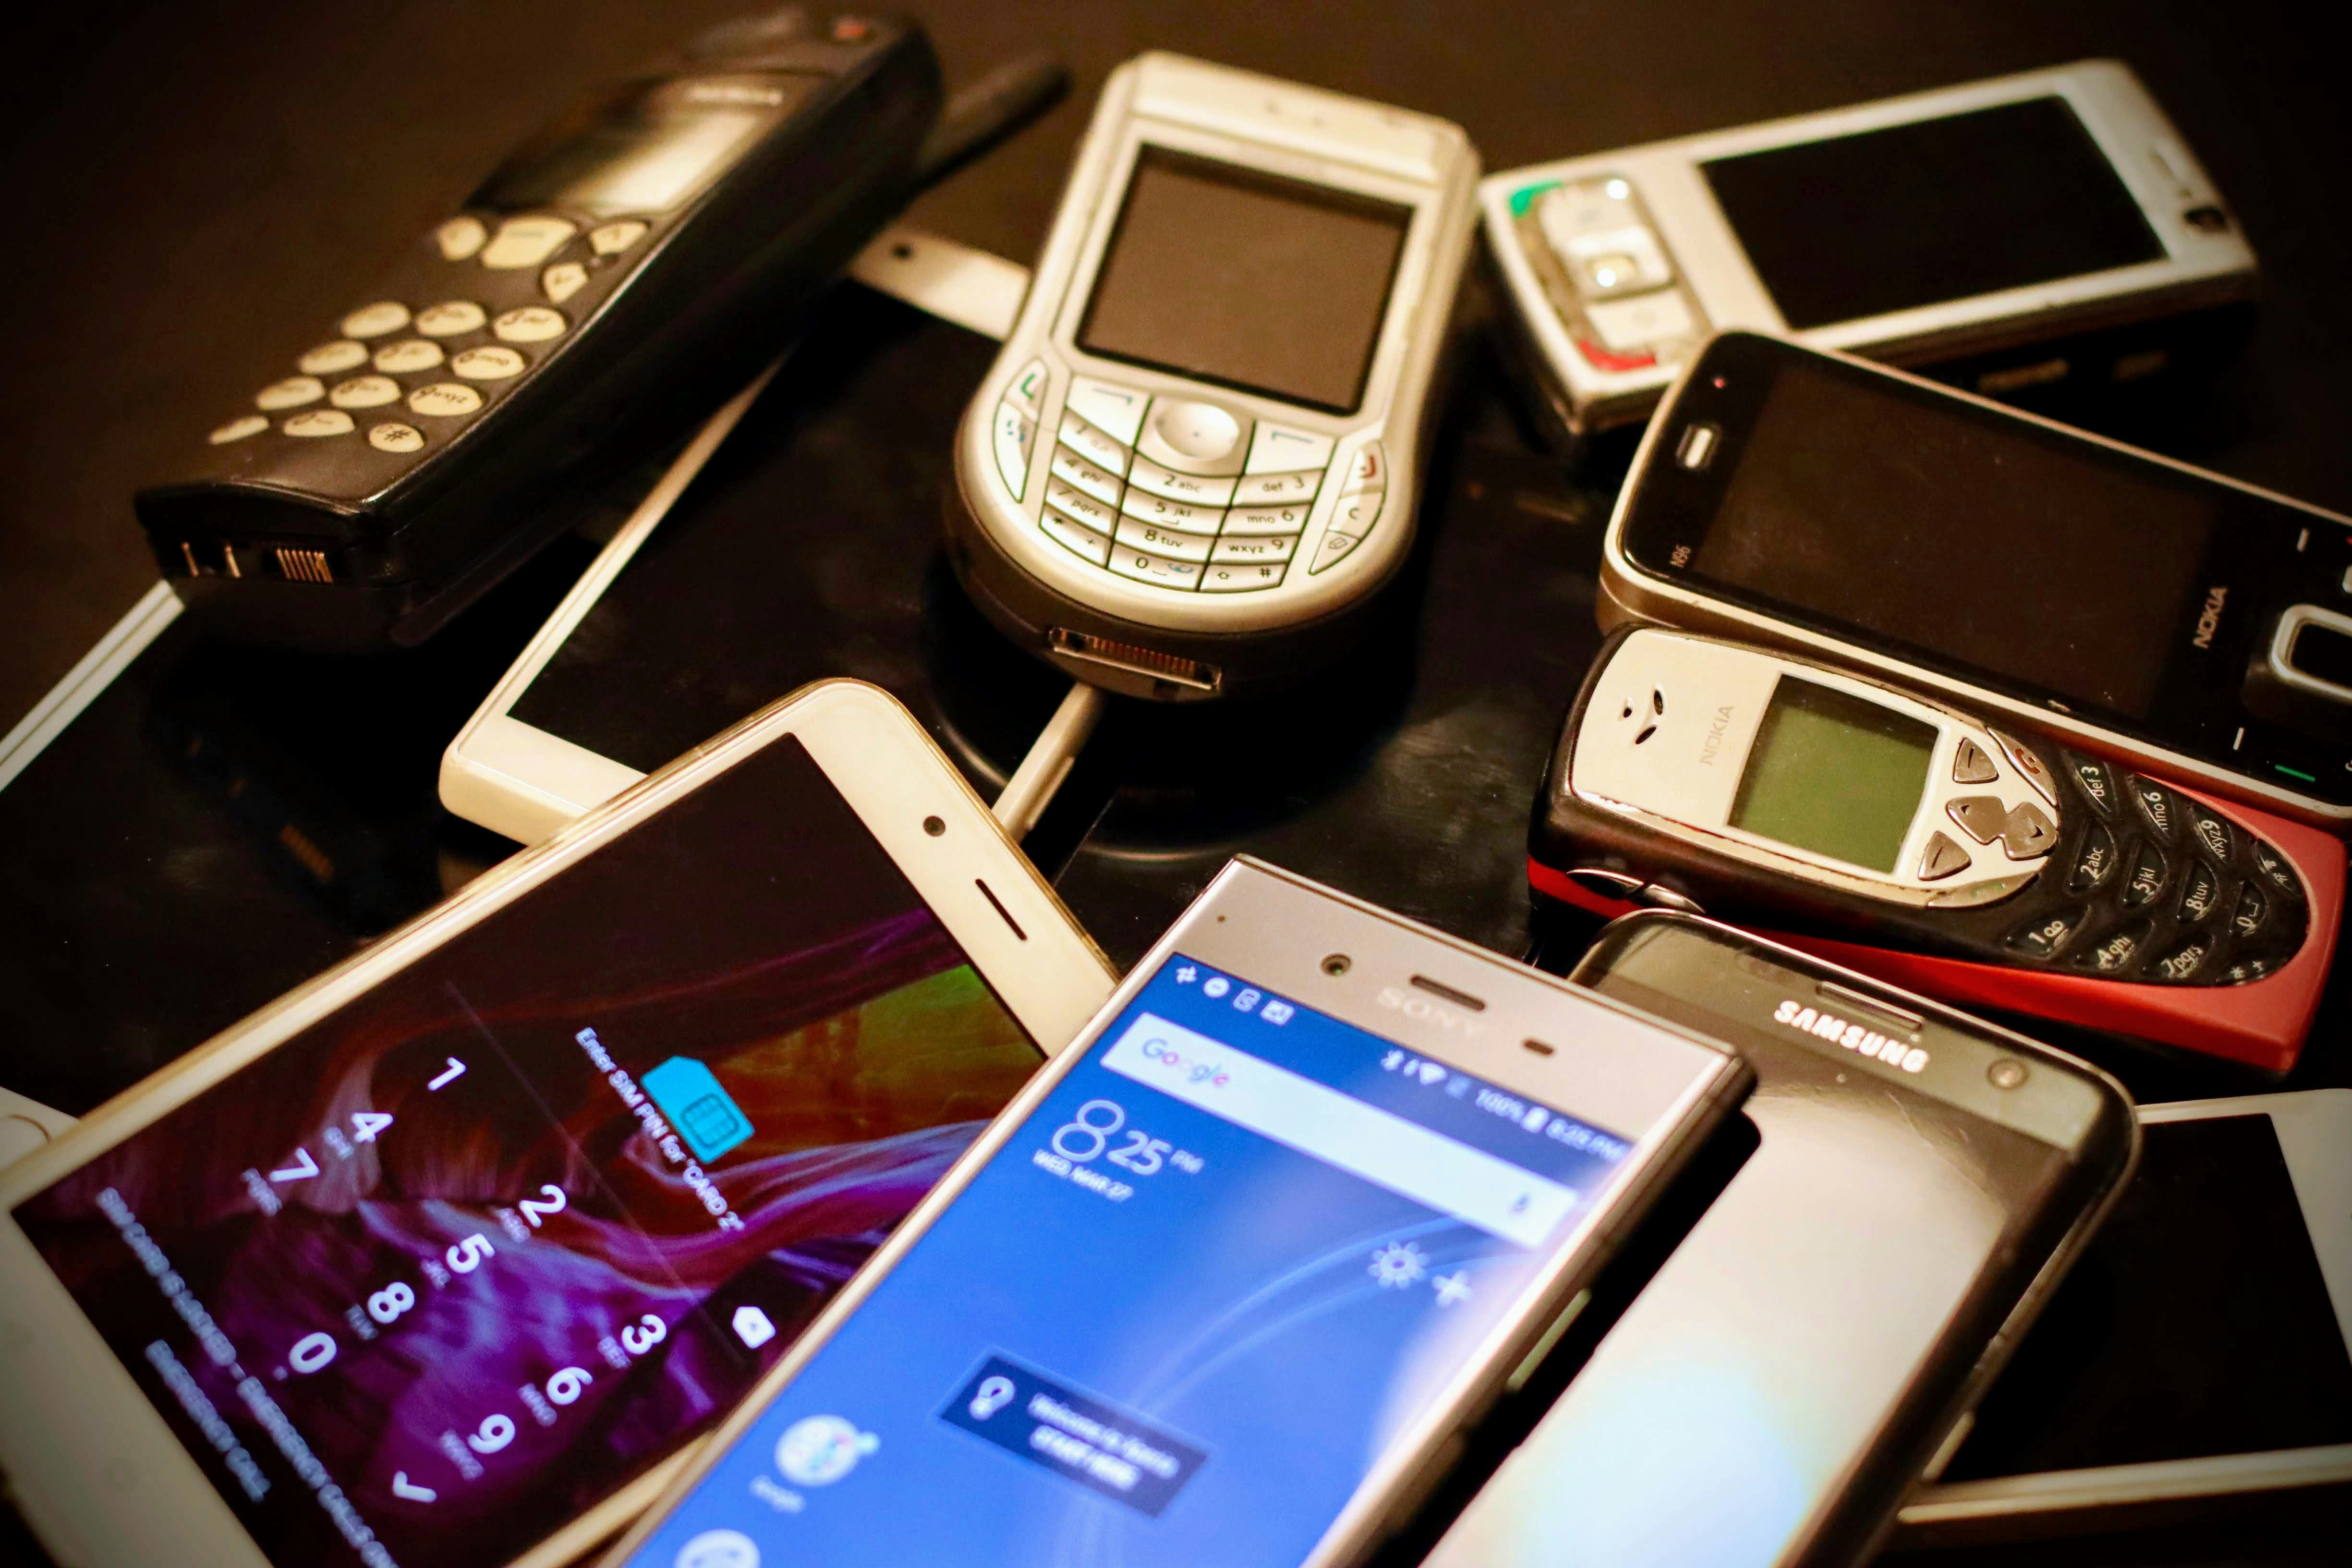 Revolusi Teknologi Tidak Lahir dengan iPhone: 3 Ponsel Terlupakan yang Membuka Jalannya? - gambar berita di imei.info